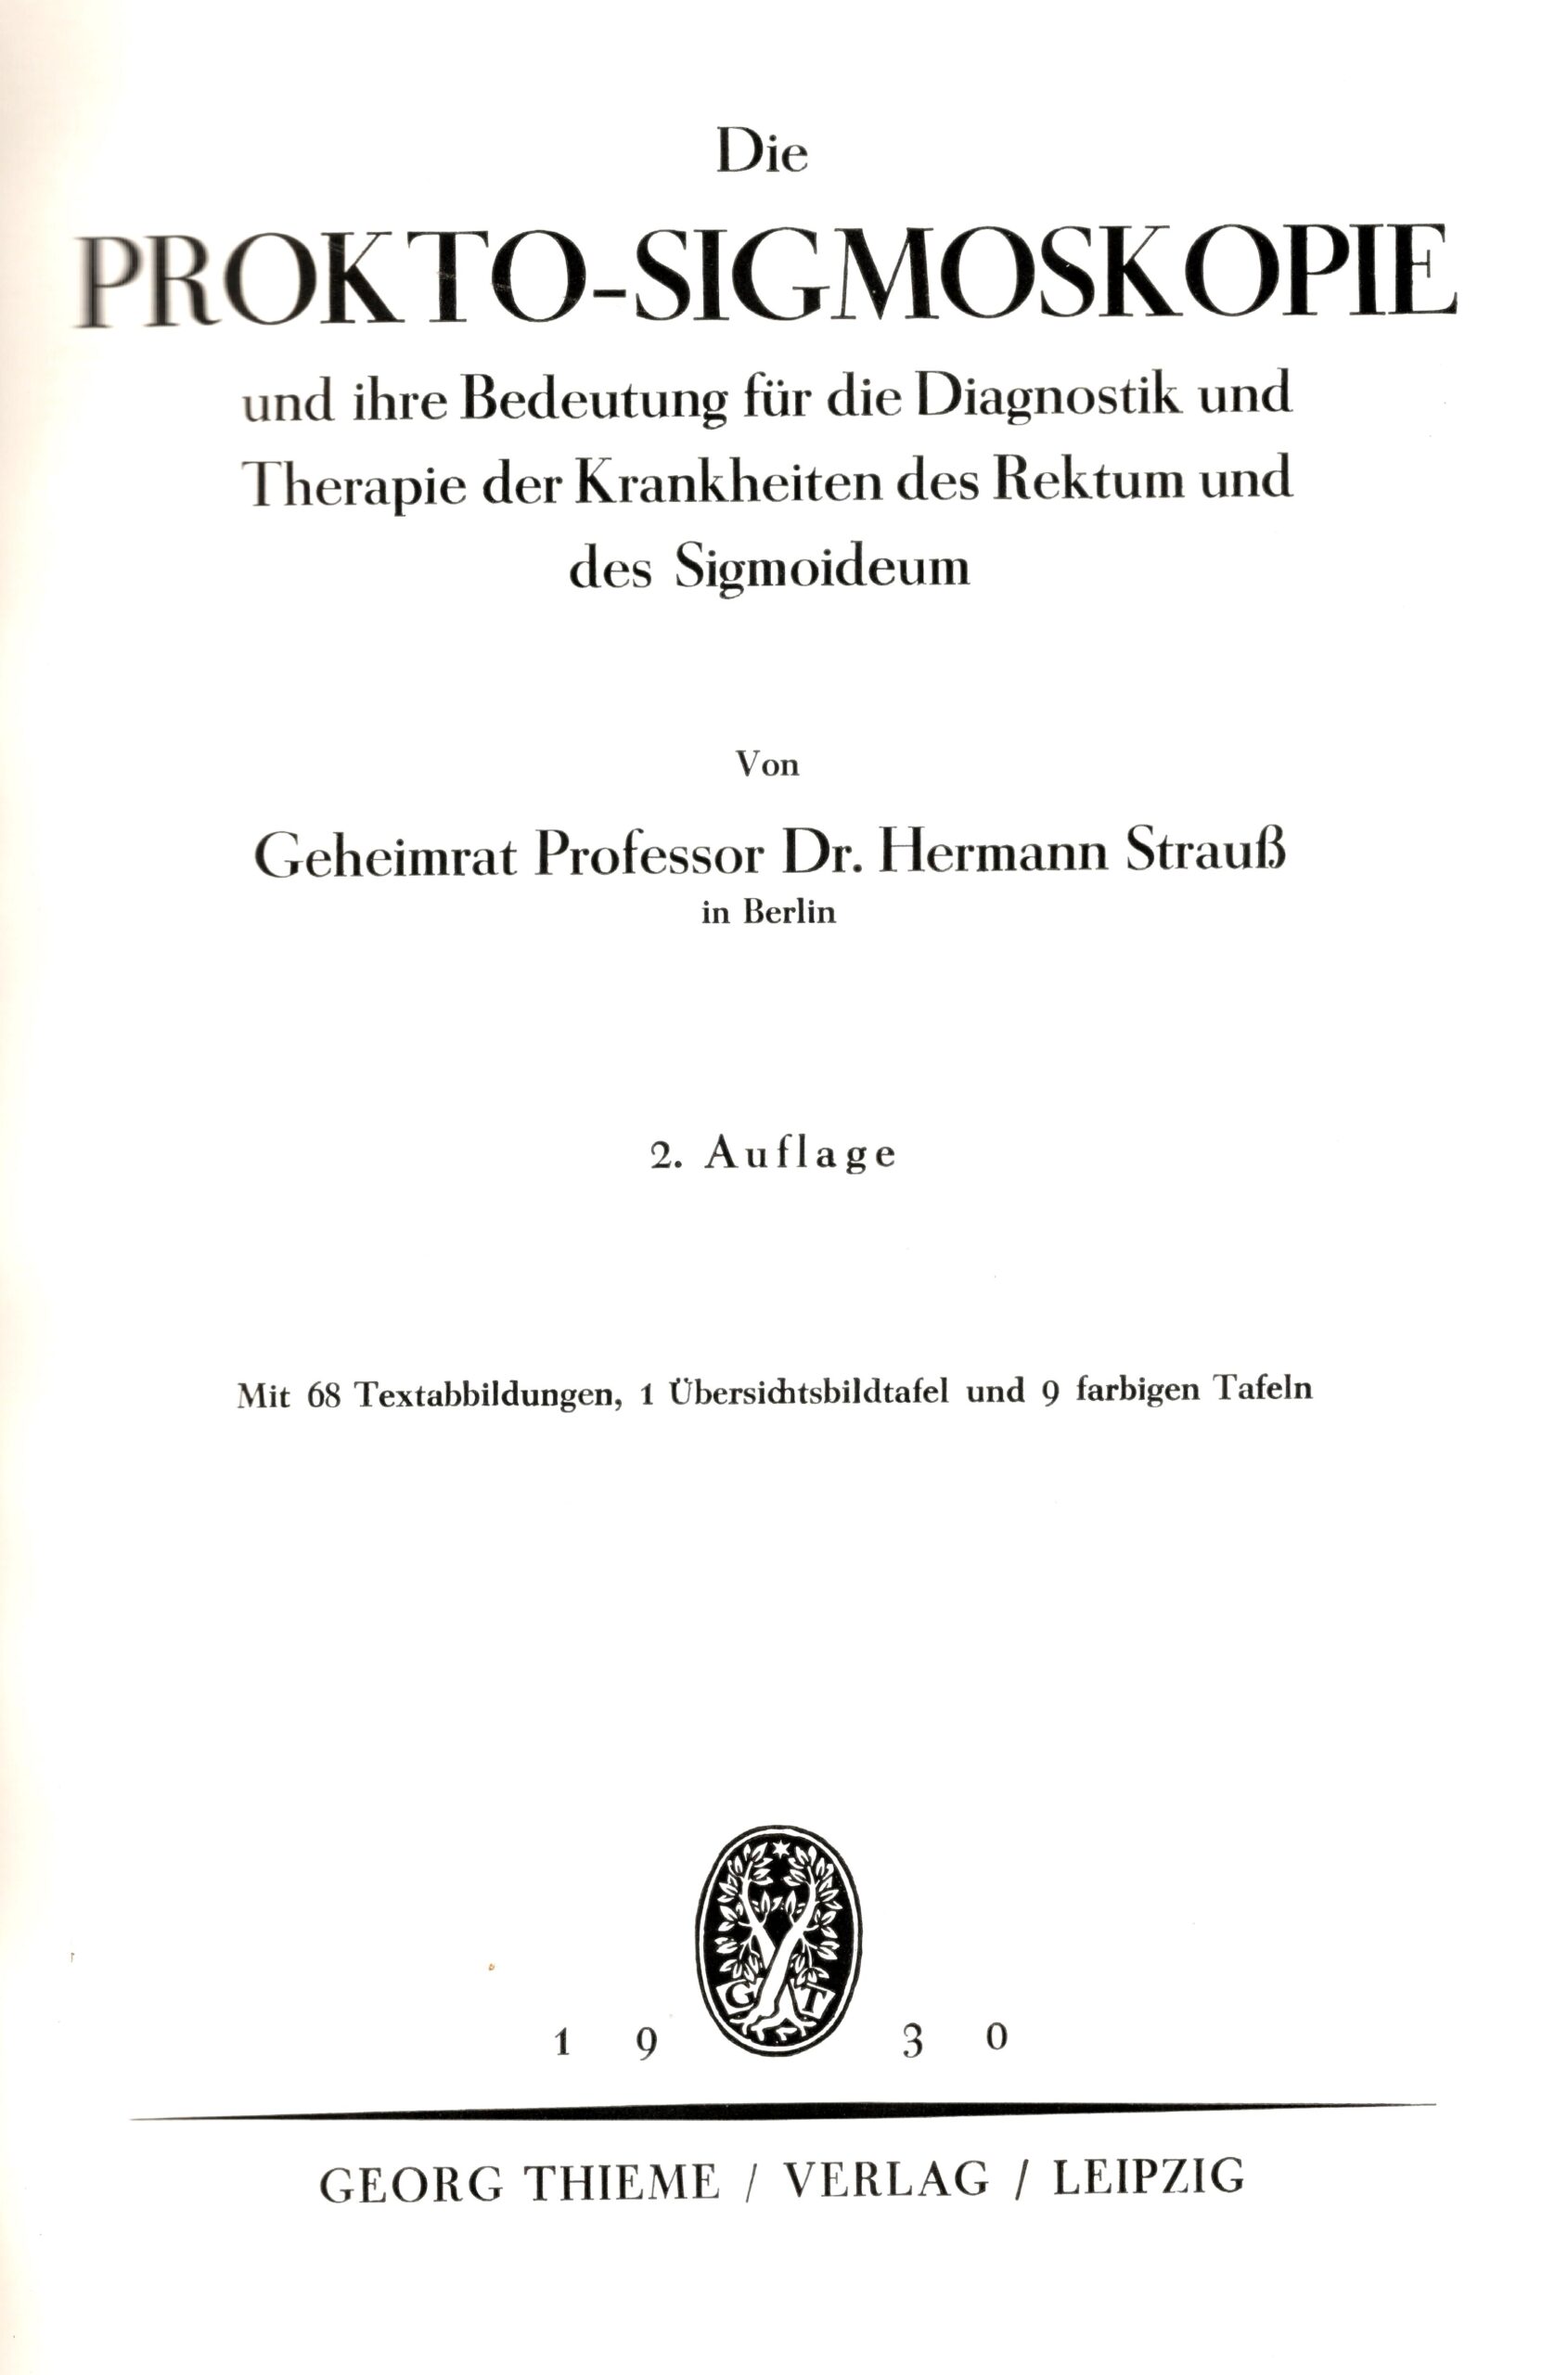 Die Prokto-Sigmoskopie, 1910 erstmals erschienen, hier 2. Aufl., Archiv H Je 